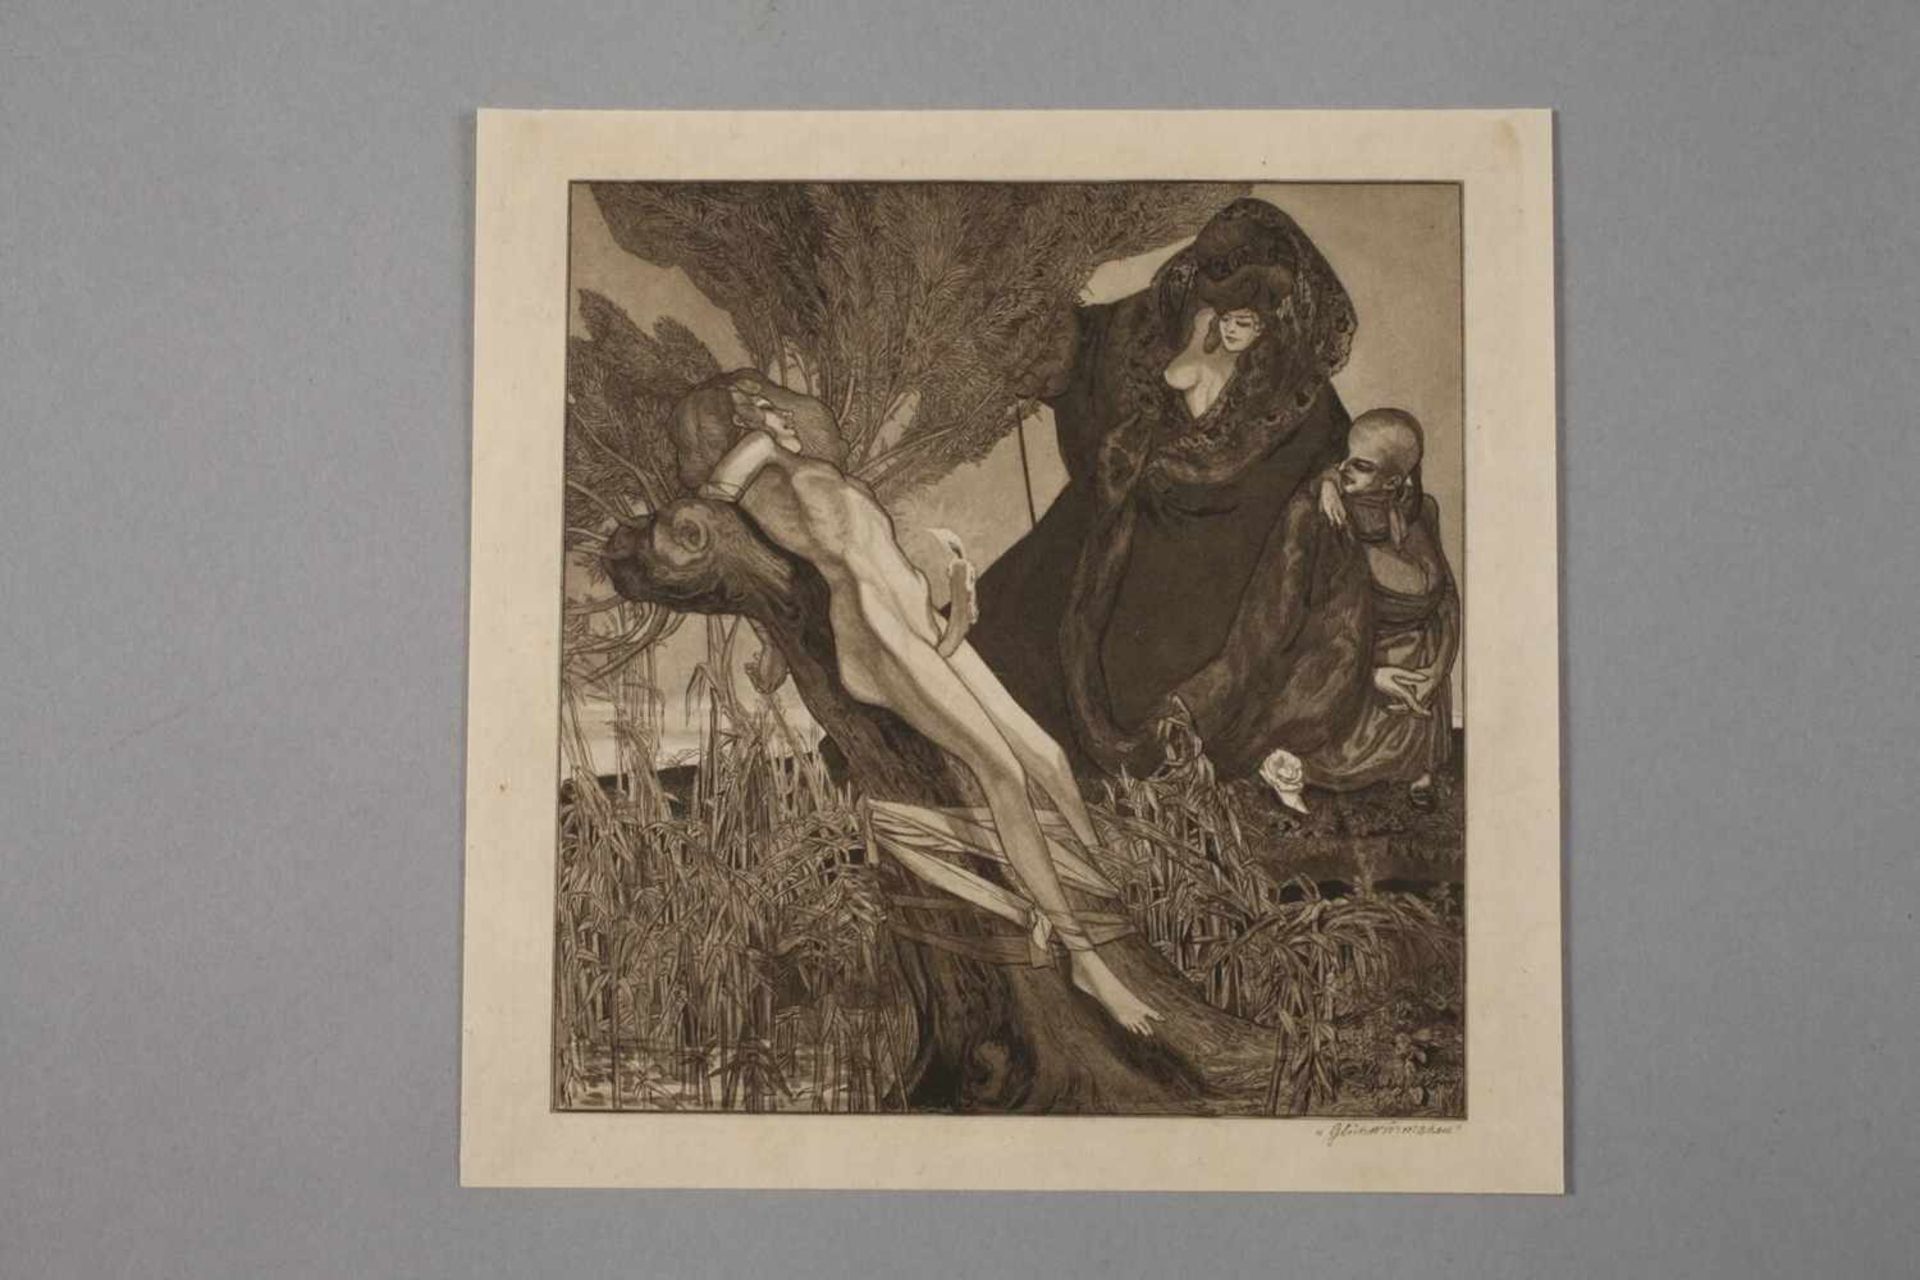 Franz von Bayros, "Glühwürmchen"phantasievolle, erotische Darstellung mit drei, teils nackten - Bild 2 aus 3